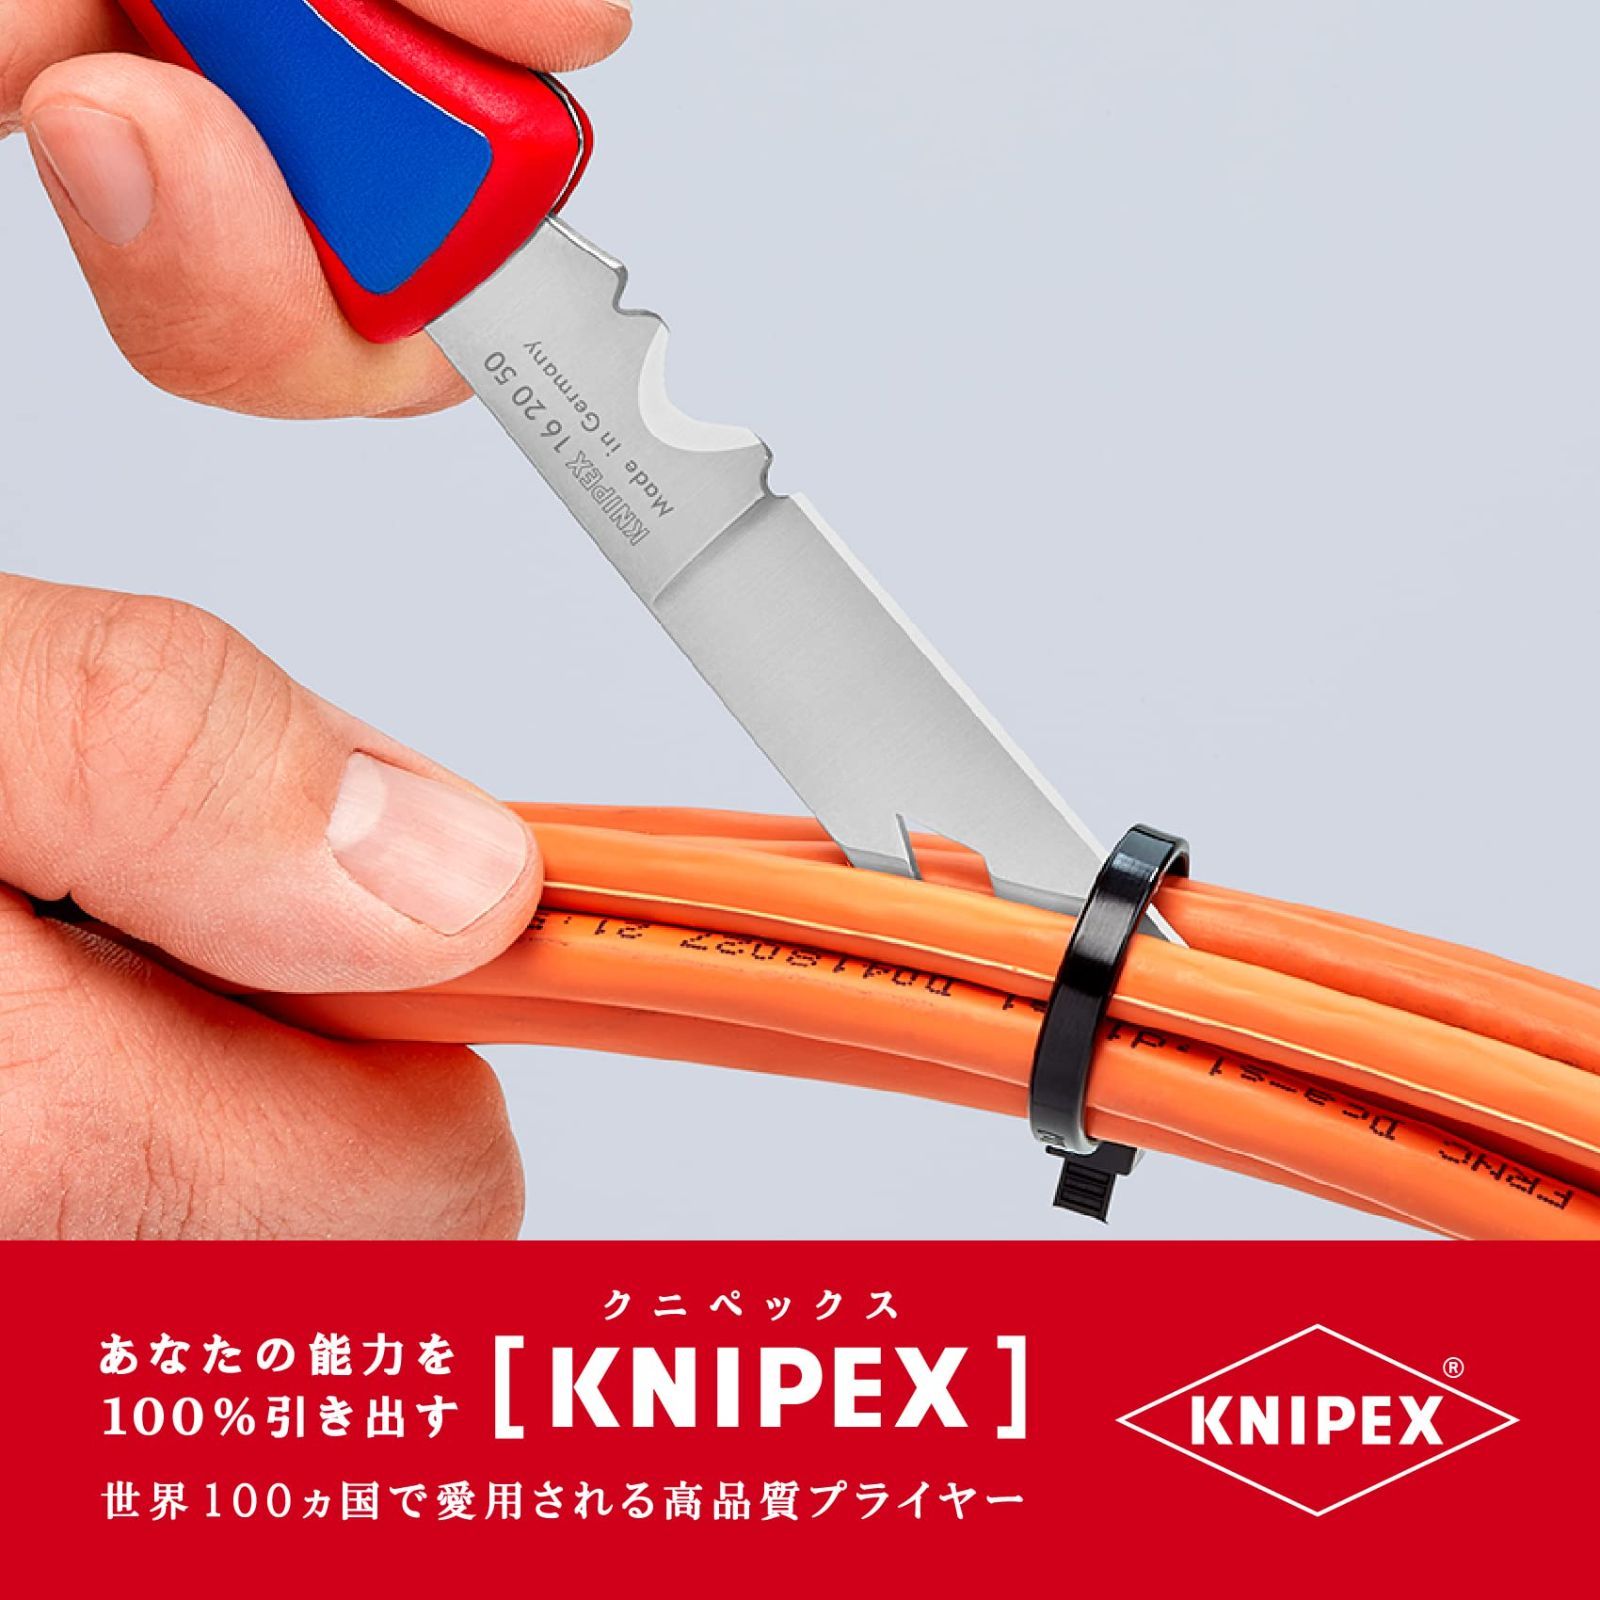 2021 KNIPEX クニペックス 002010 パワーパック